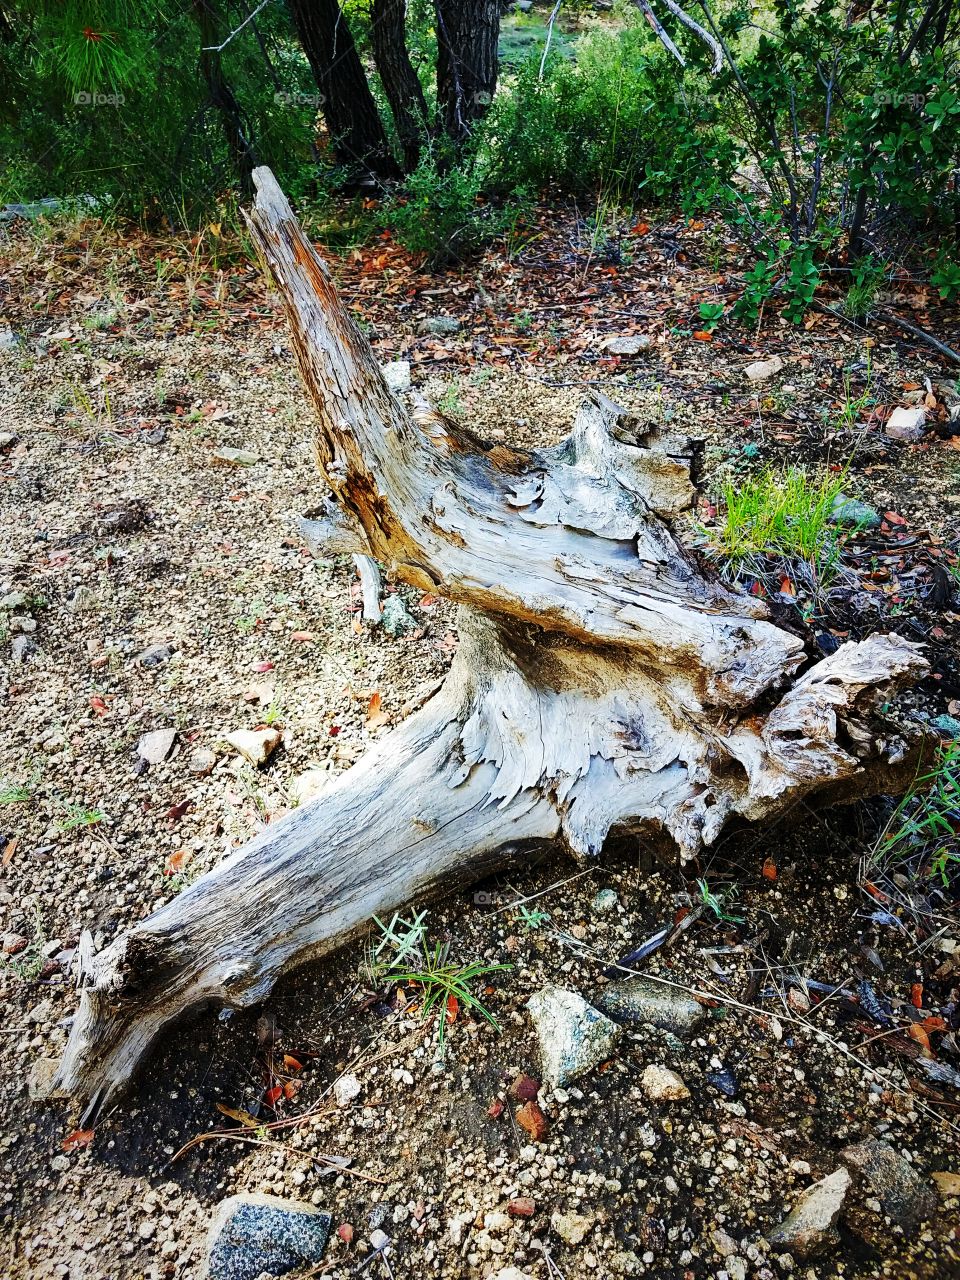 Dead wood